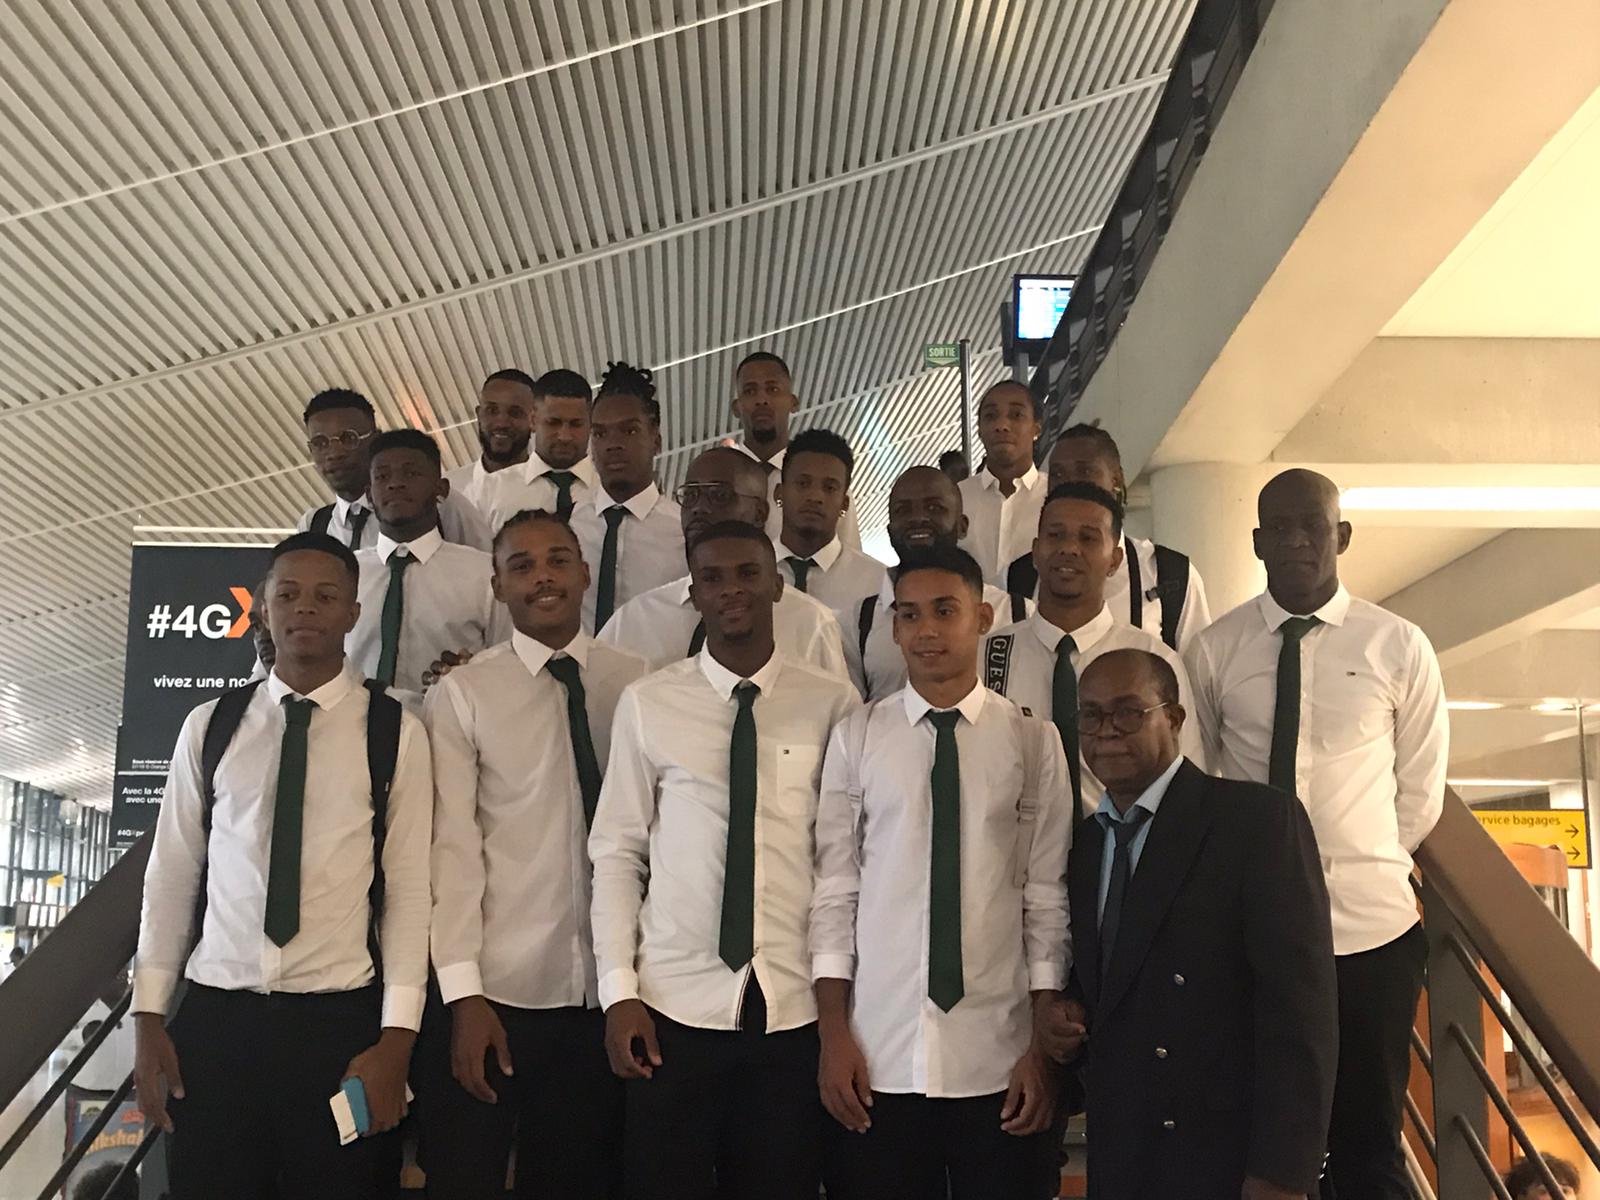     Les footballeurs du Club Franciscain ont quitté la Martinique pour disputer le 8e tour de la coupe de France

